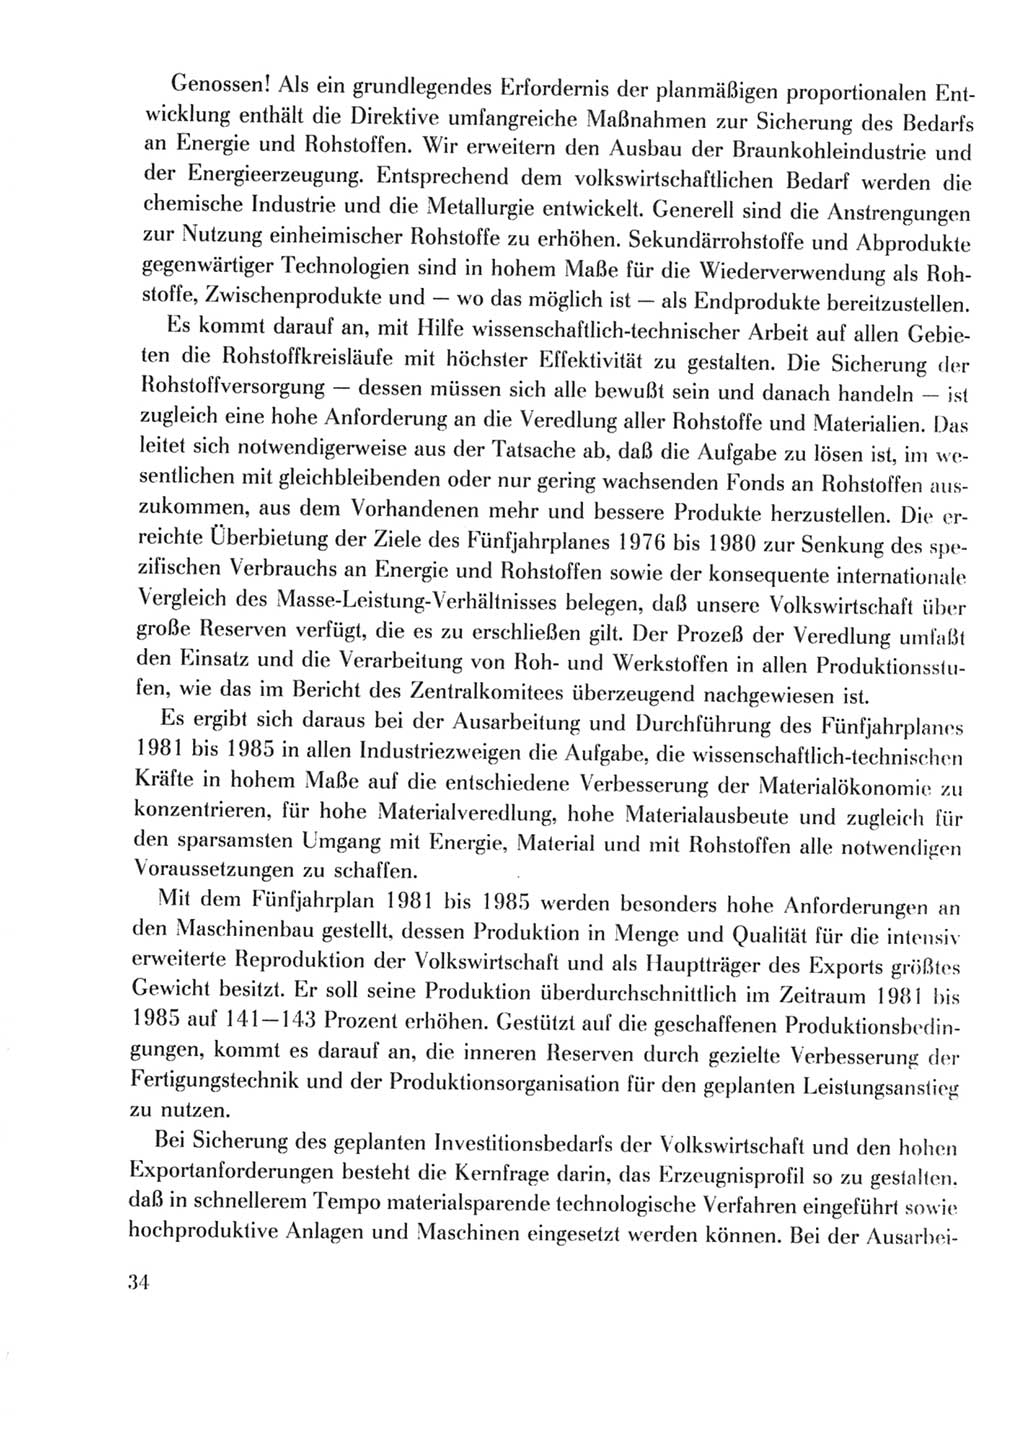 Protokoll der Verhandlungen des Ⅹ. Parteitages der Sozialistischen Einheitspartei Deutschlands (SED) [Deutsche Demokratische Republik (DDR)] 1981, Band 2, Seite 34 (Prot. Verh. Ⅹ. PT SED DDR 1981, Bd. 2, S. 34)